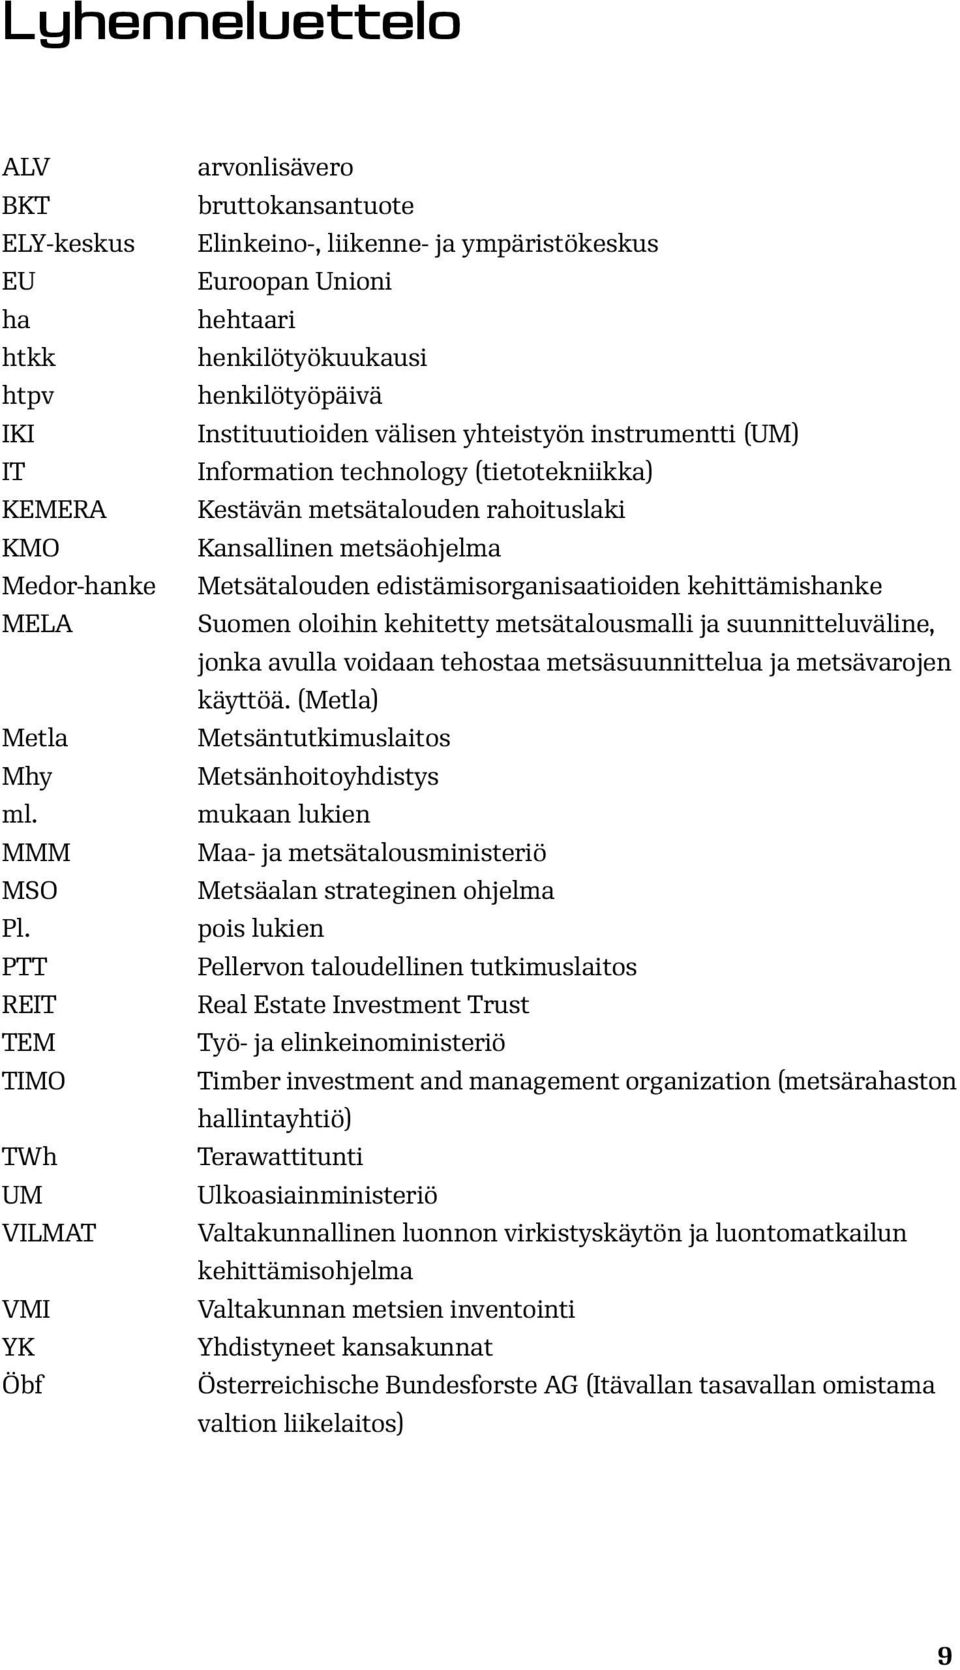 yhteistyön instrumentti (UM) Information technology (tietotekniikka) Kestävän metsätalouden rahoituslaki Kansallinen metsäohjelma Metsätalouden edistämisorganisaatioiden kehittämishanke Suomen